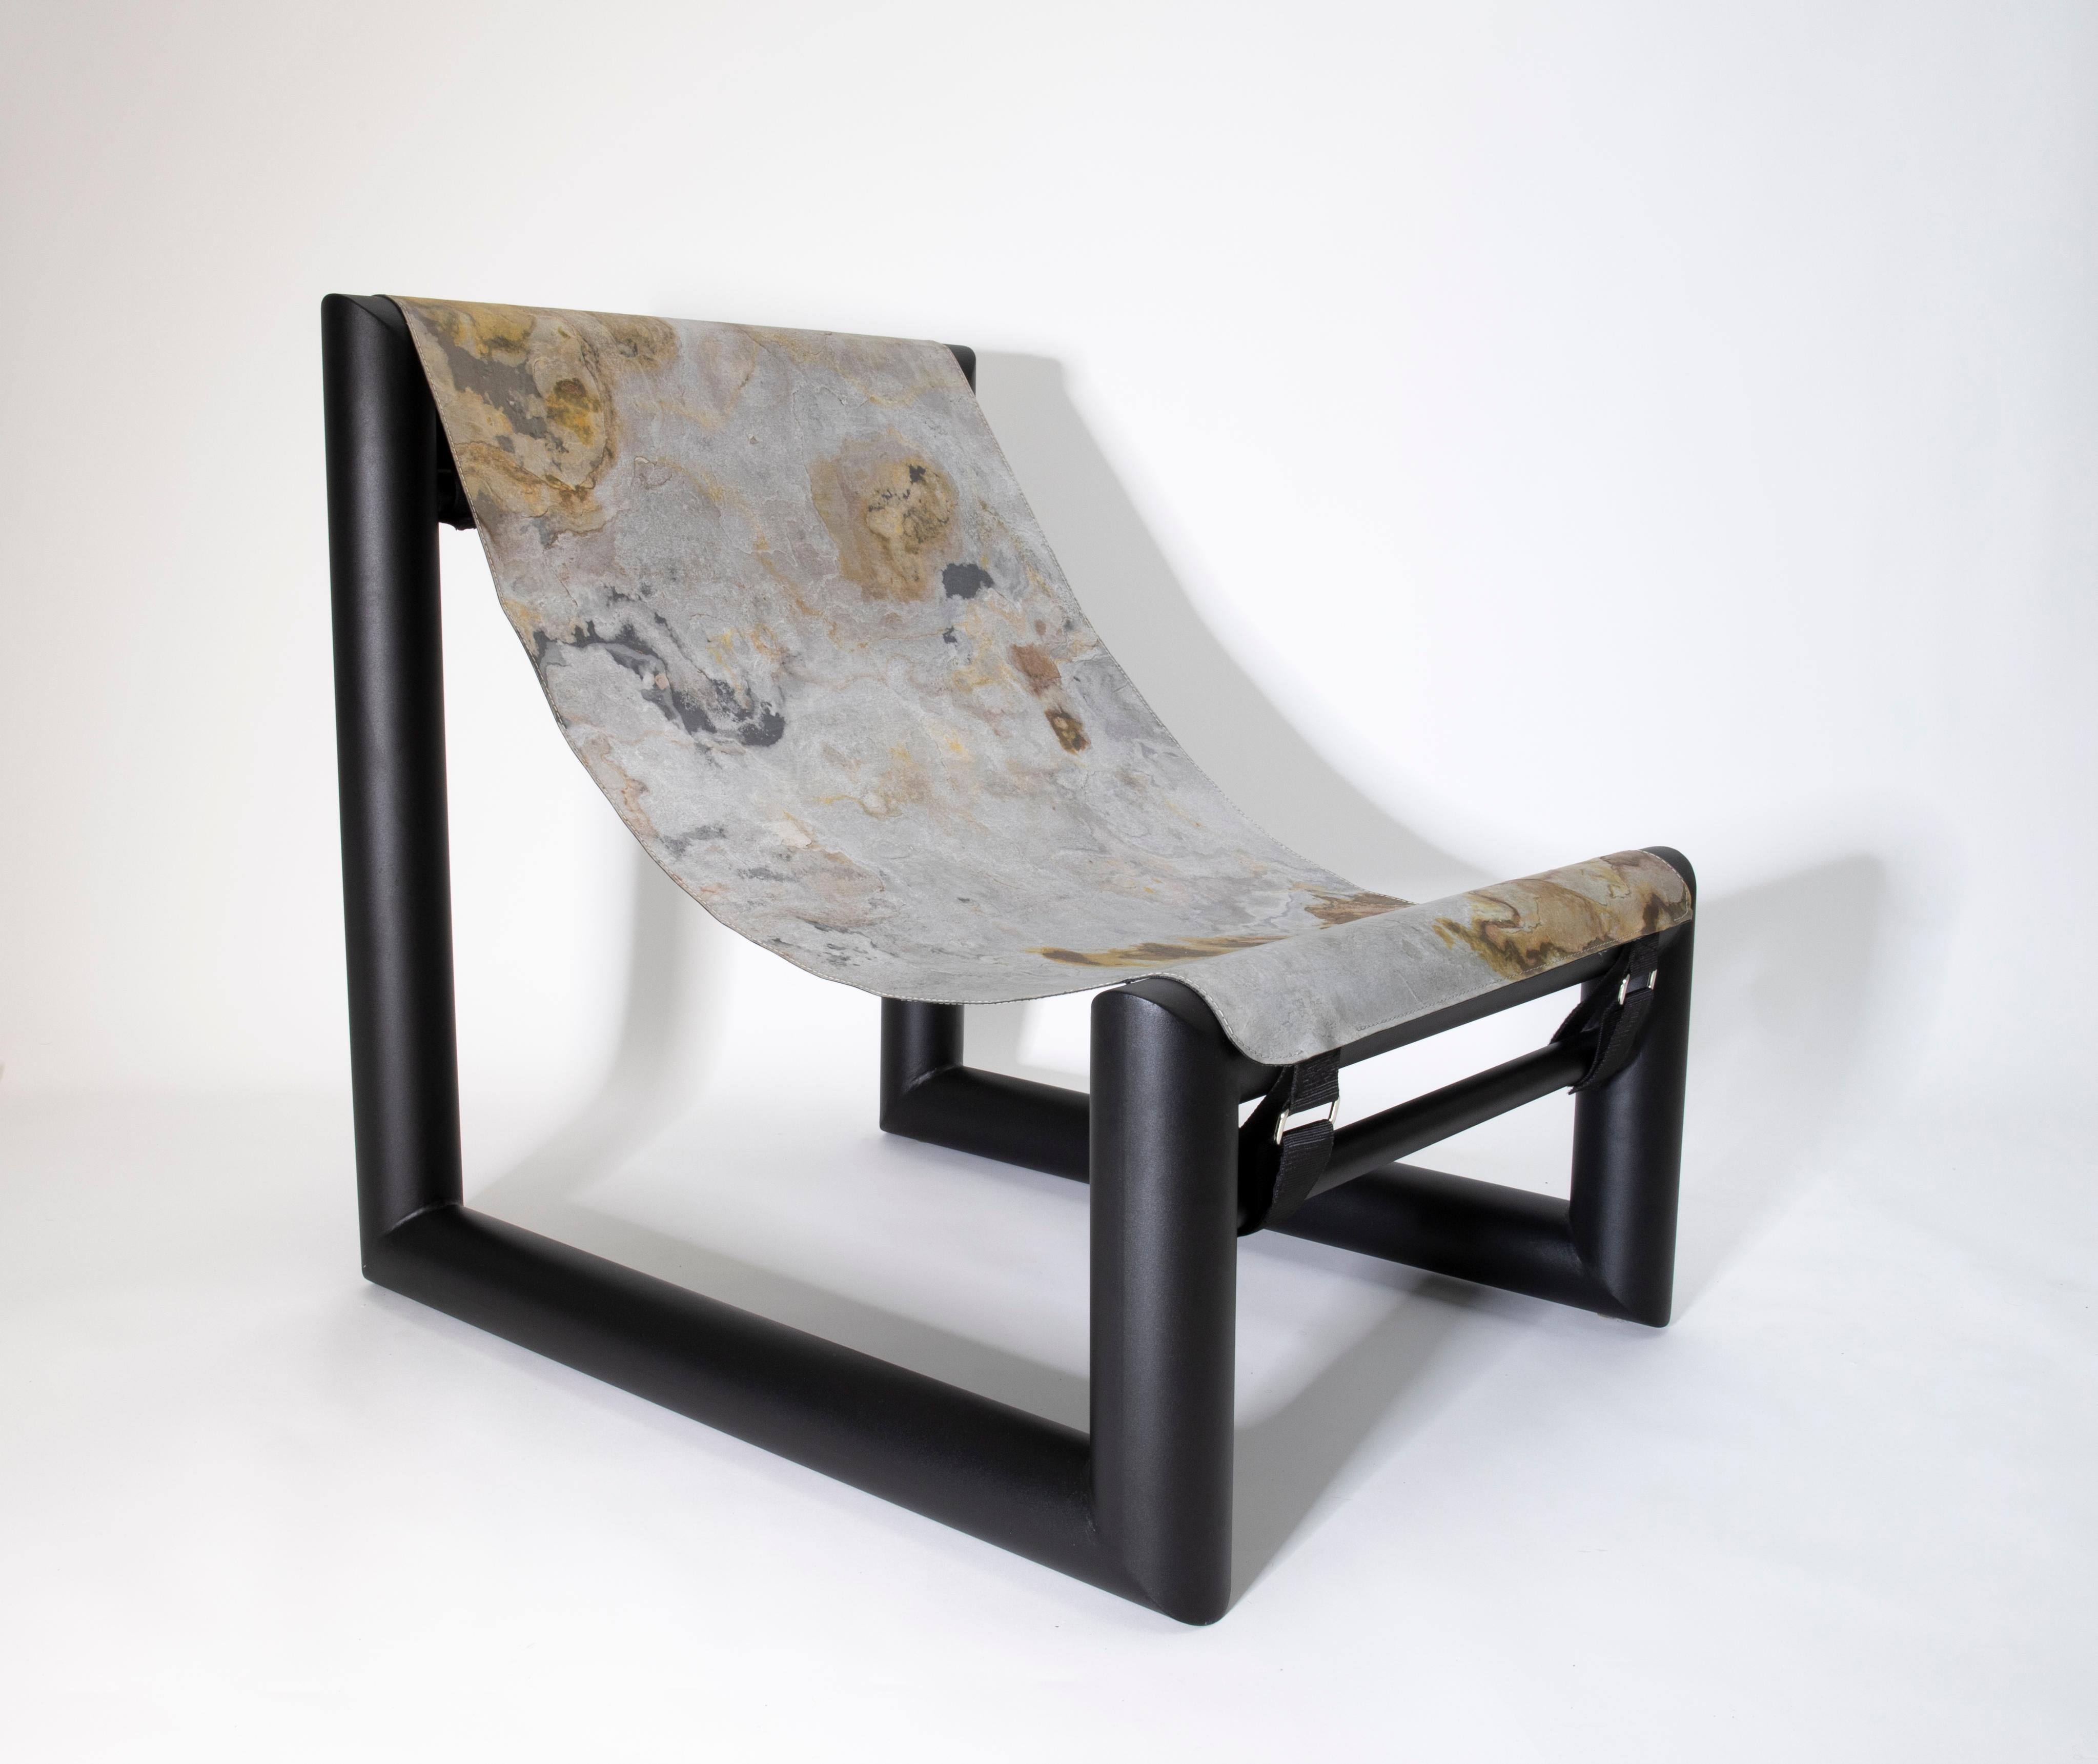 Bau rouge ist ein Loungesessel, inspiriert von den warmen und langen Gesteinsschichten entlang der Mittelmeerküste an der Côte d'Azur, auf die man sich nach einem frischen Bad gerne legt.
Der Stuhl wird in einer limitierten Auflage von 13 Stück pro